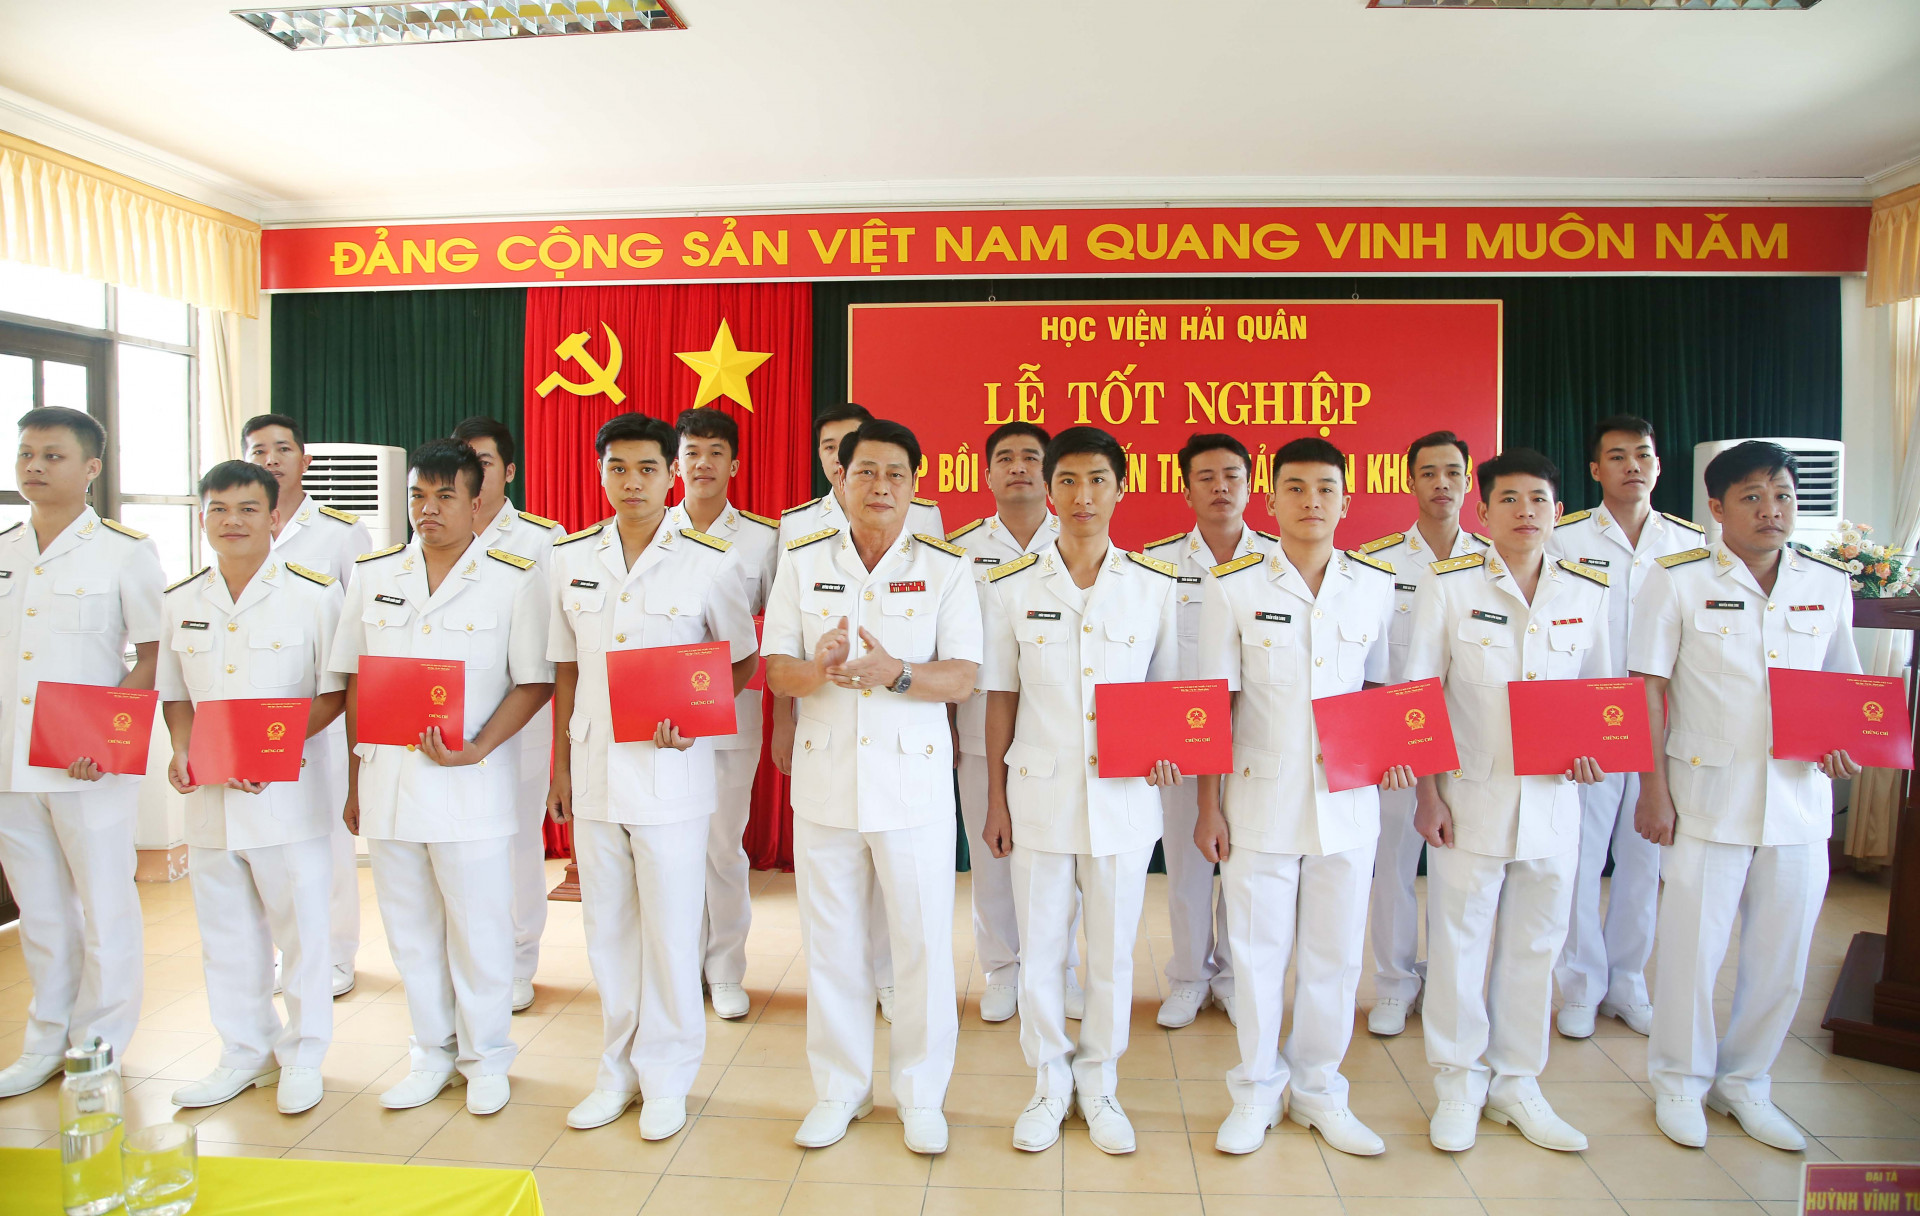 Phó Giám đốc Học viện Hải quân trao chứng chỉ cho các học viên tốt nghiệp 